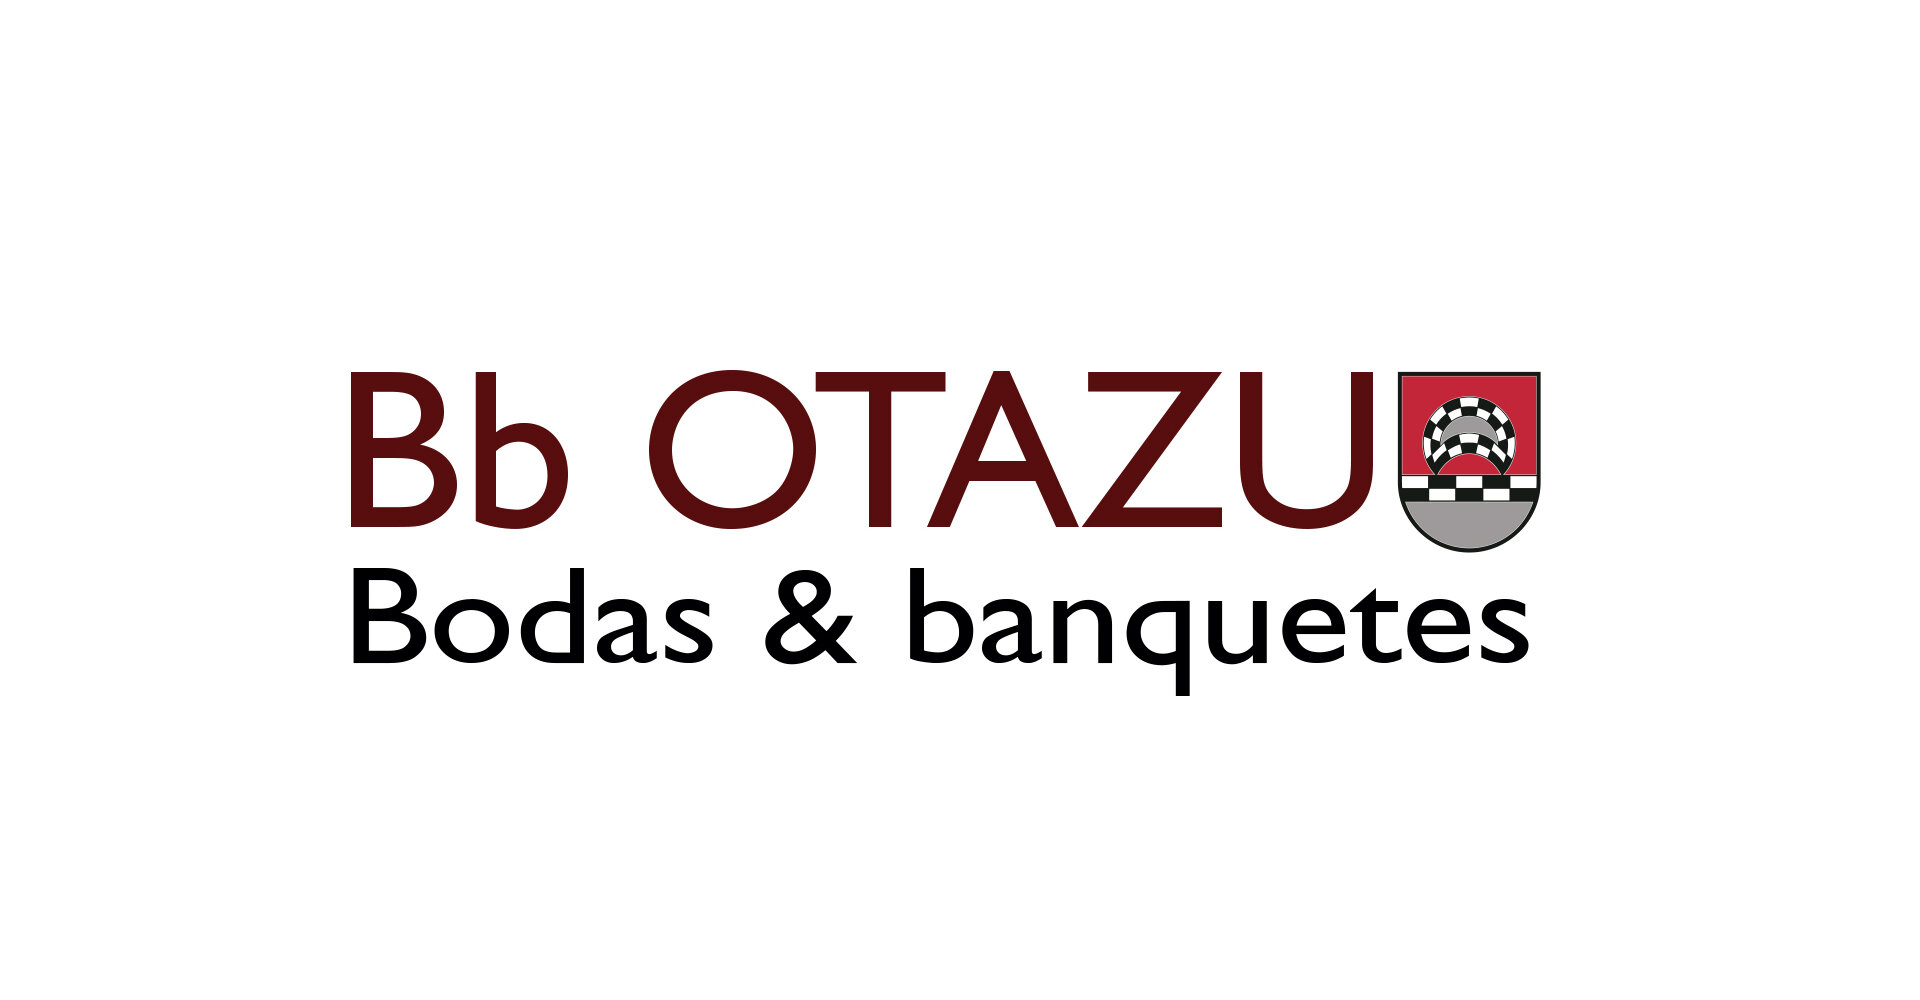 Bodas y banquetes Otazu, miembro de Honor de Fundación Osasuna